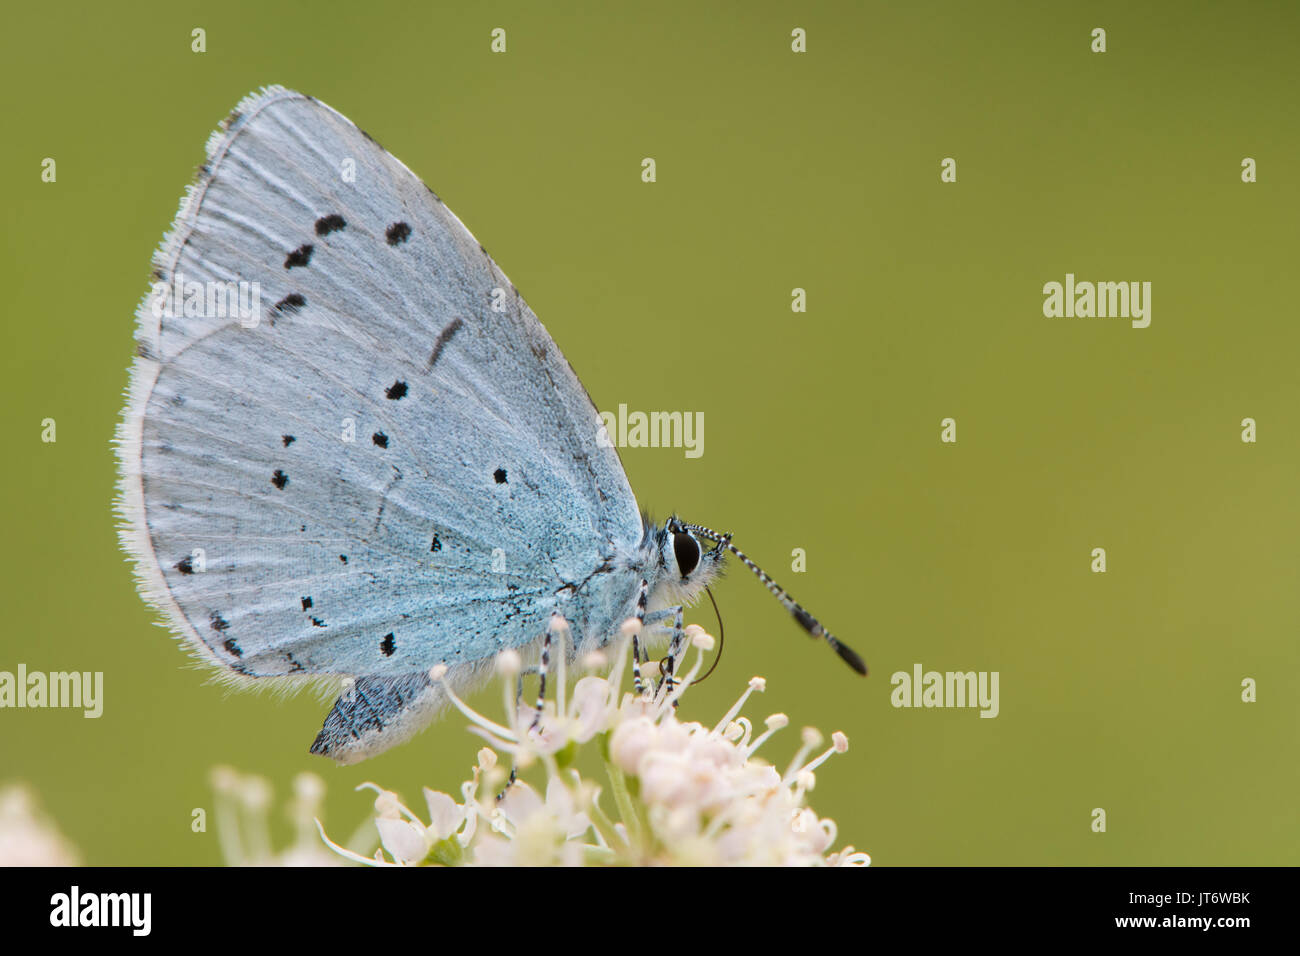 Holly blu (Celastrina argiolus) alimentazione su hogweed vicino. Femmina insetto britannico nella famiglia Lycaenidae nectaring con parte inferiore visibile Foto Stock